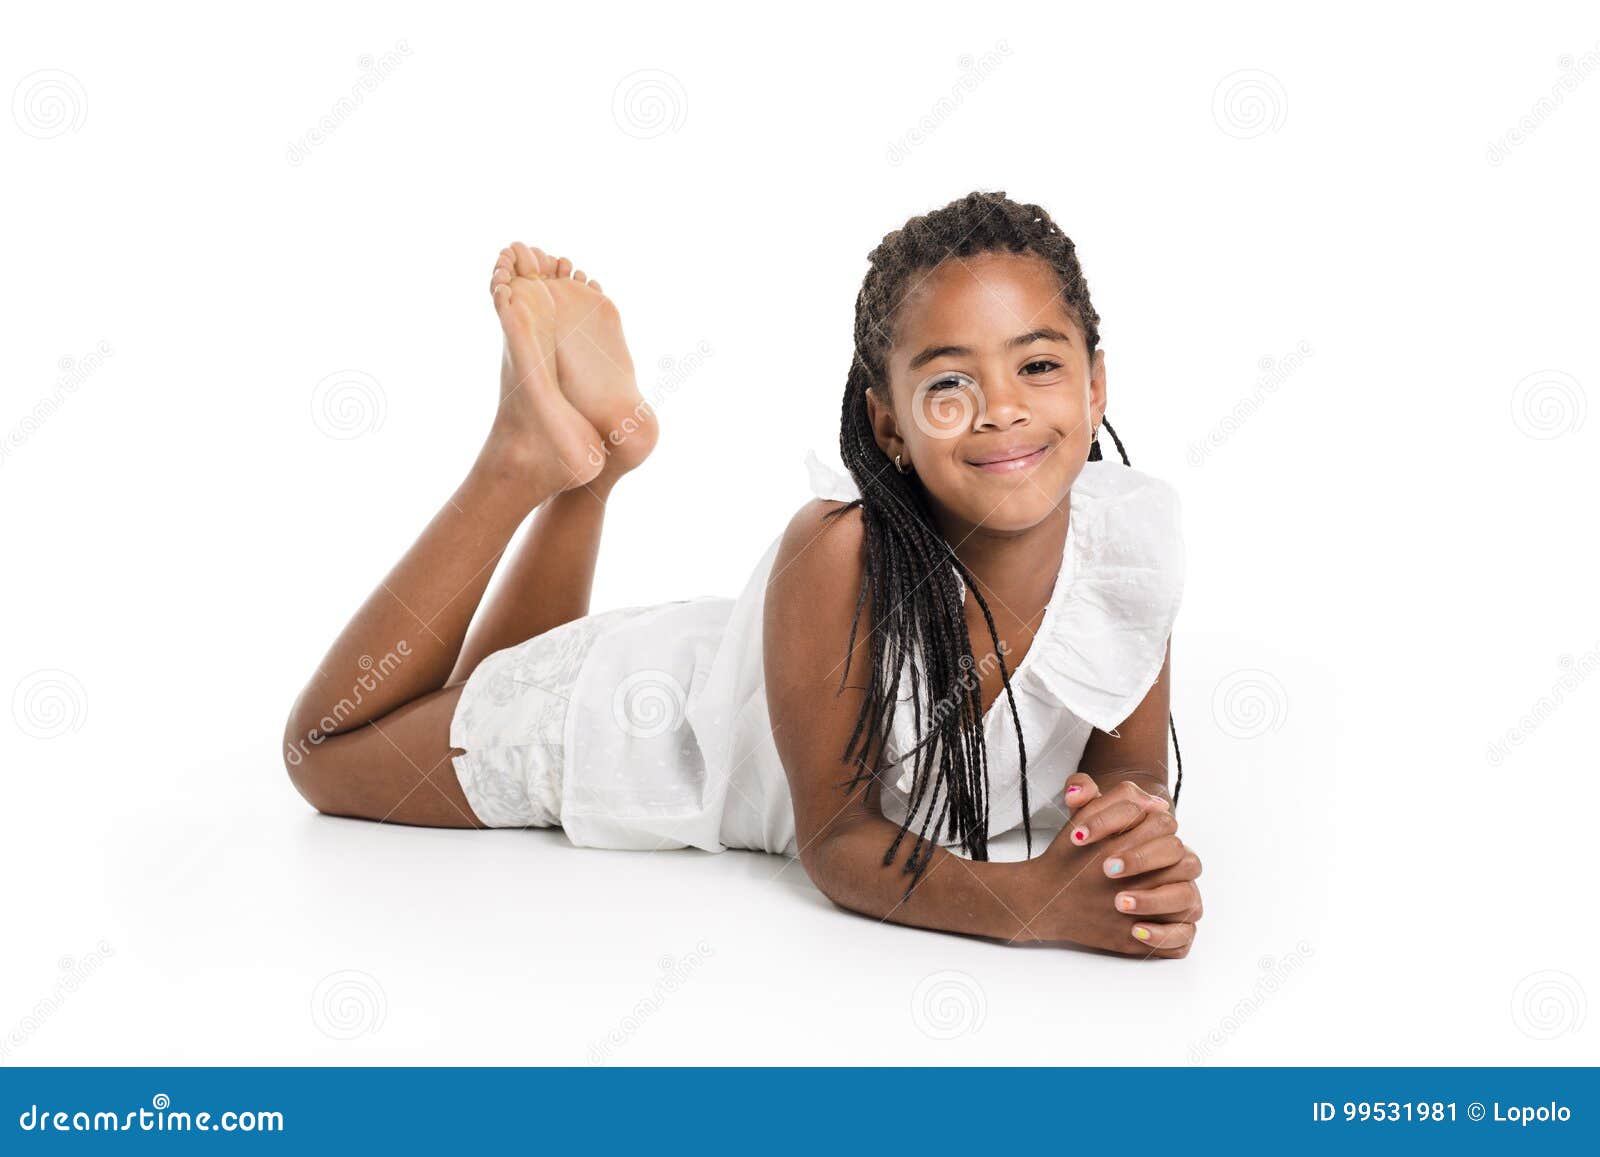 一个小女孩的画象有一种非洲的发型的 库存图片. 图片 包括有 加勒比, 表达式, 种族, 初期, 拉丁语 - 43842611